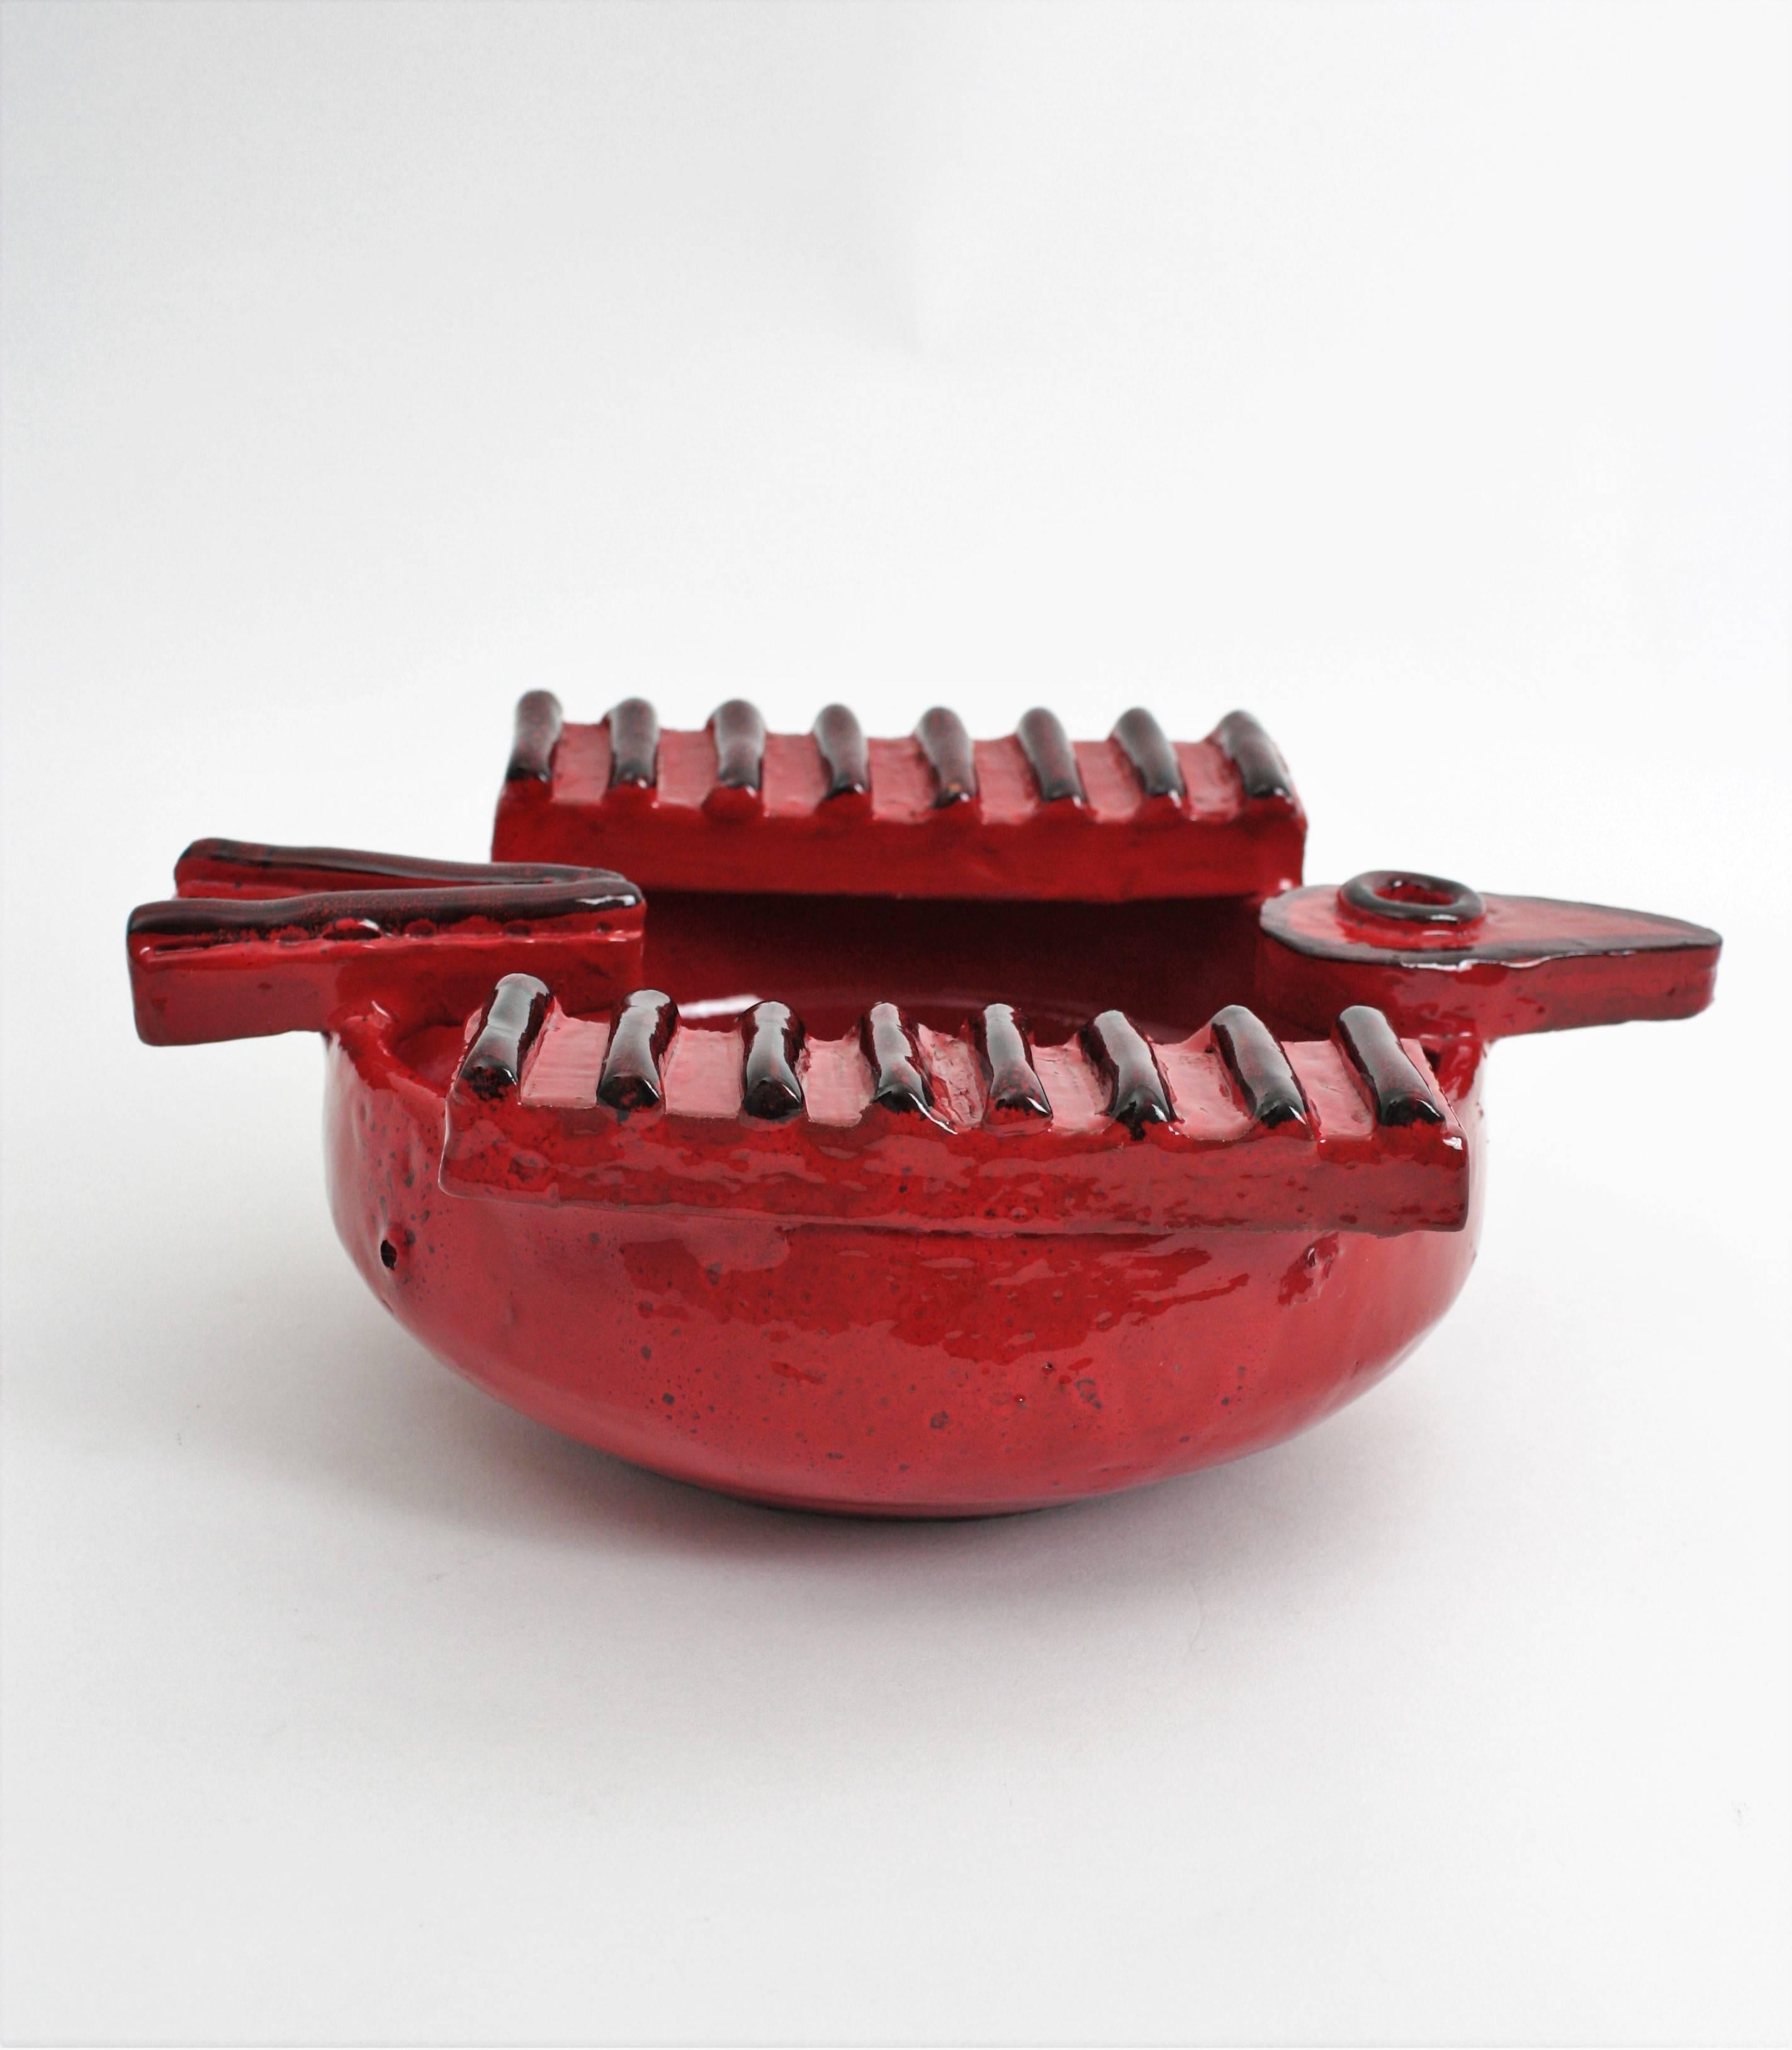 Roter Aschenbecher/Schale aus Keramik in Vogelform aus der spanischen Picasso-Ära, 1950er Jahre (Handgefertigt)